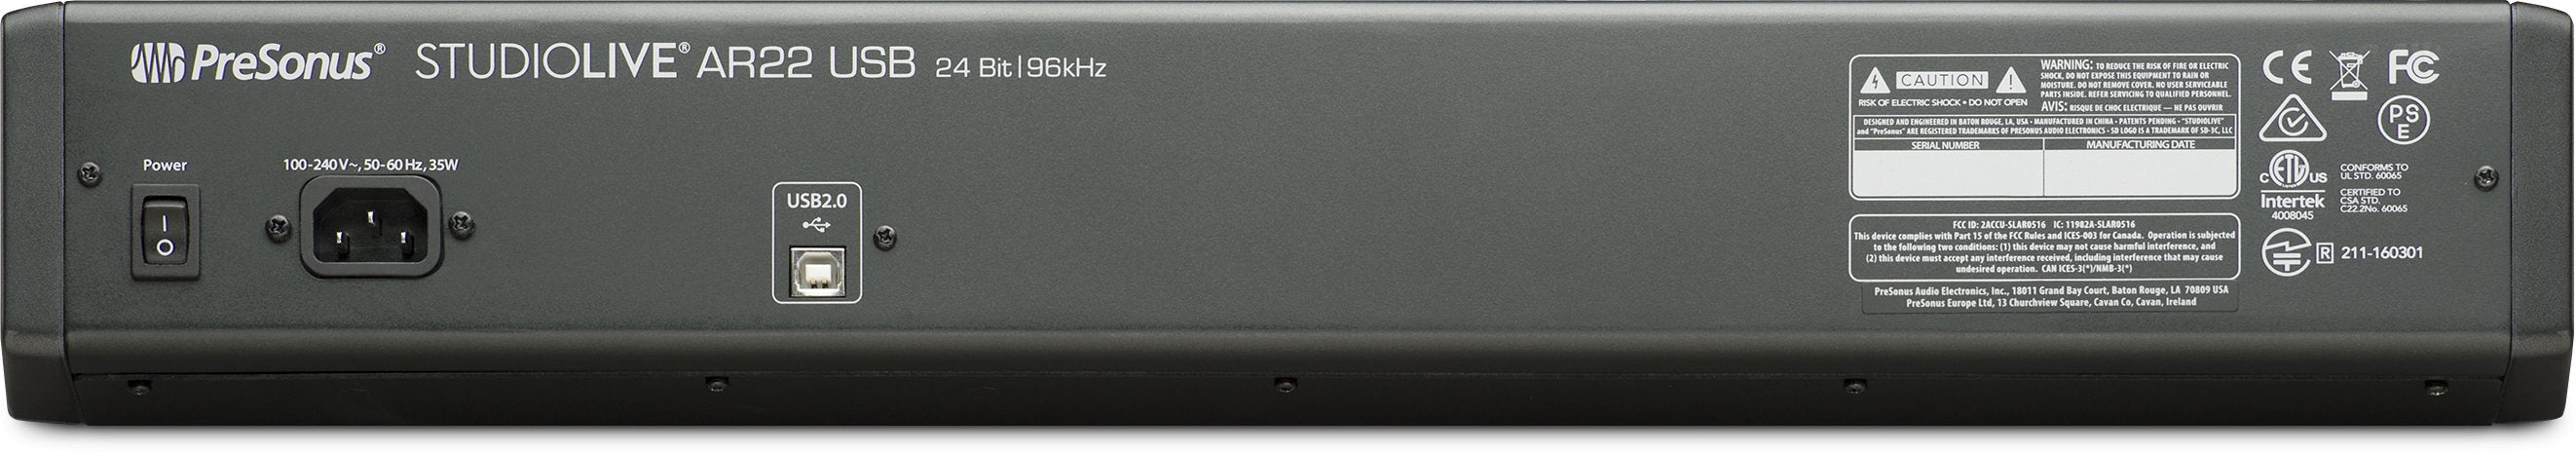 PreSonus StudioLive AR22 USB